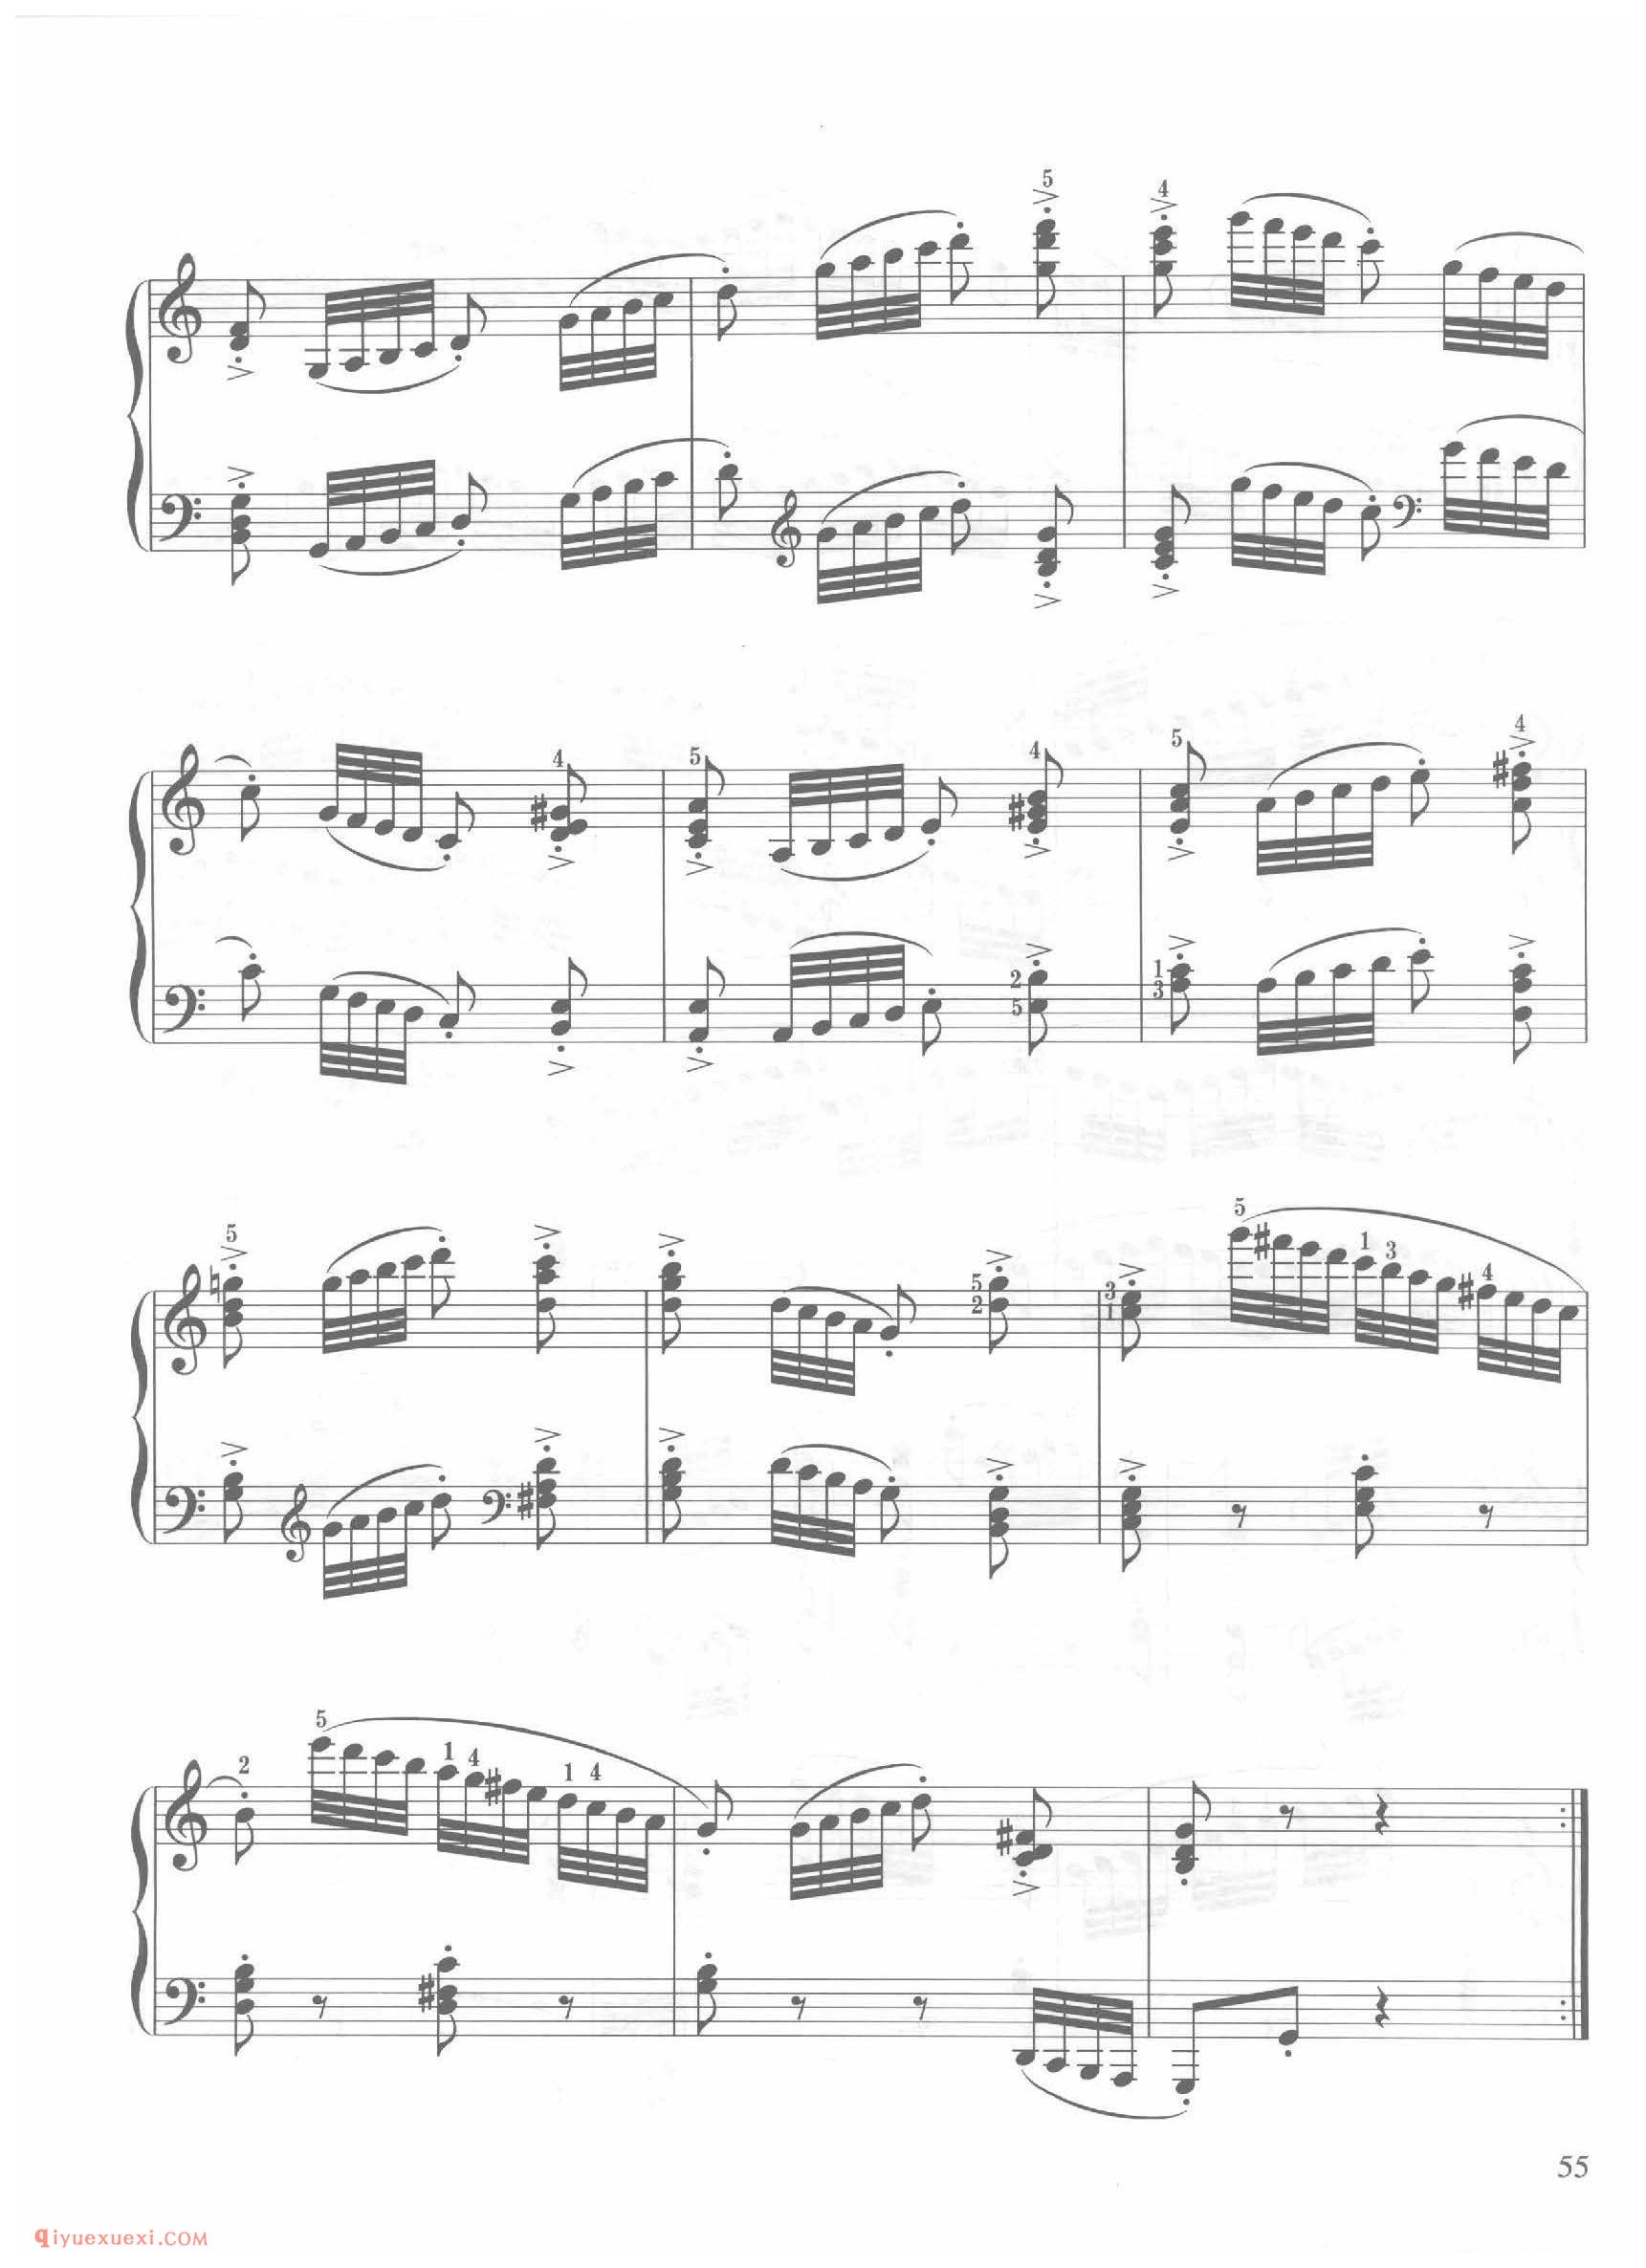 第16条C大调非常活跃而有力地(Molto vivace energi)车尔尼钢琴作品849_常桦讲解 注释